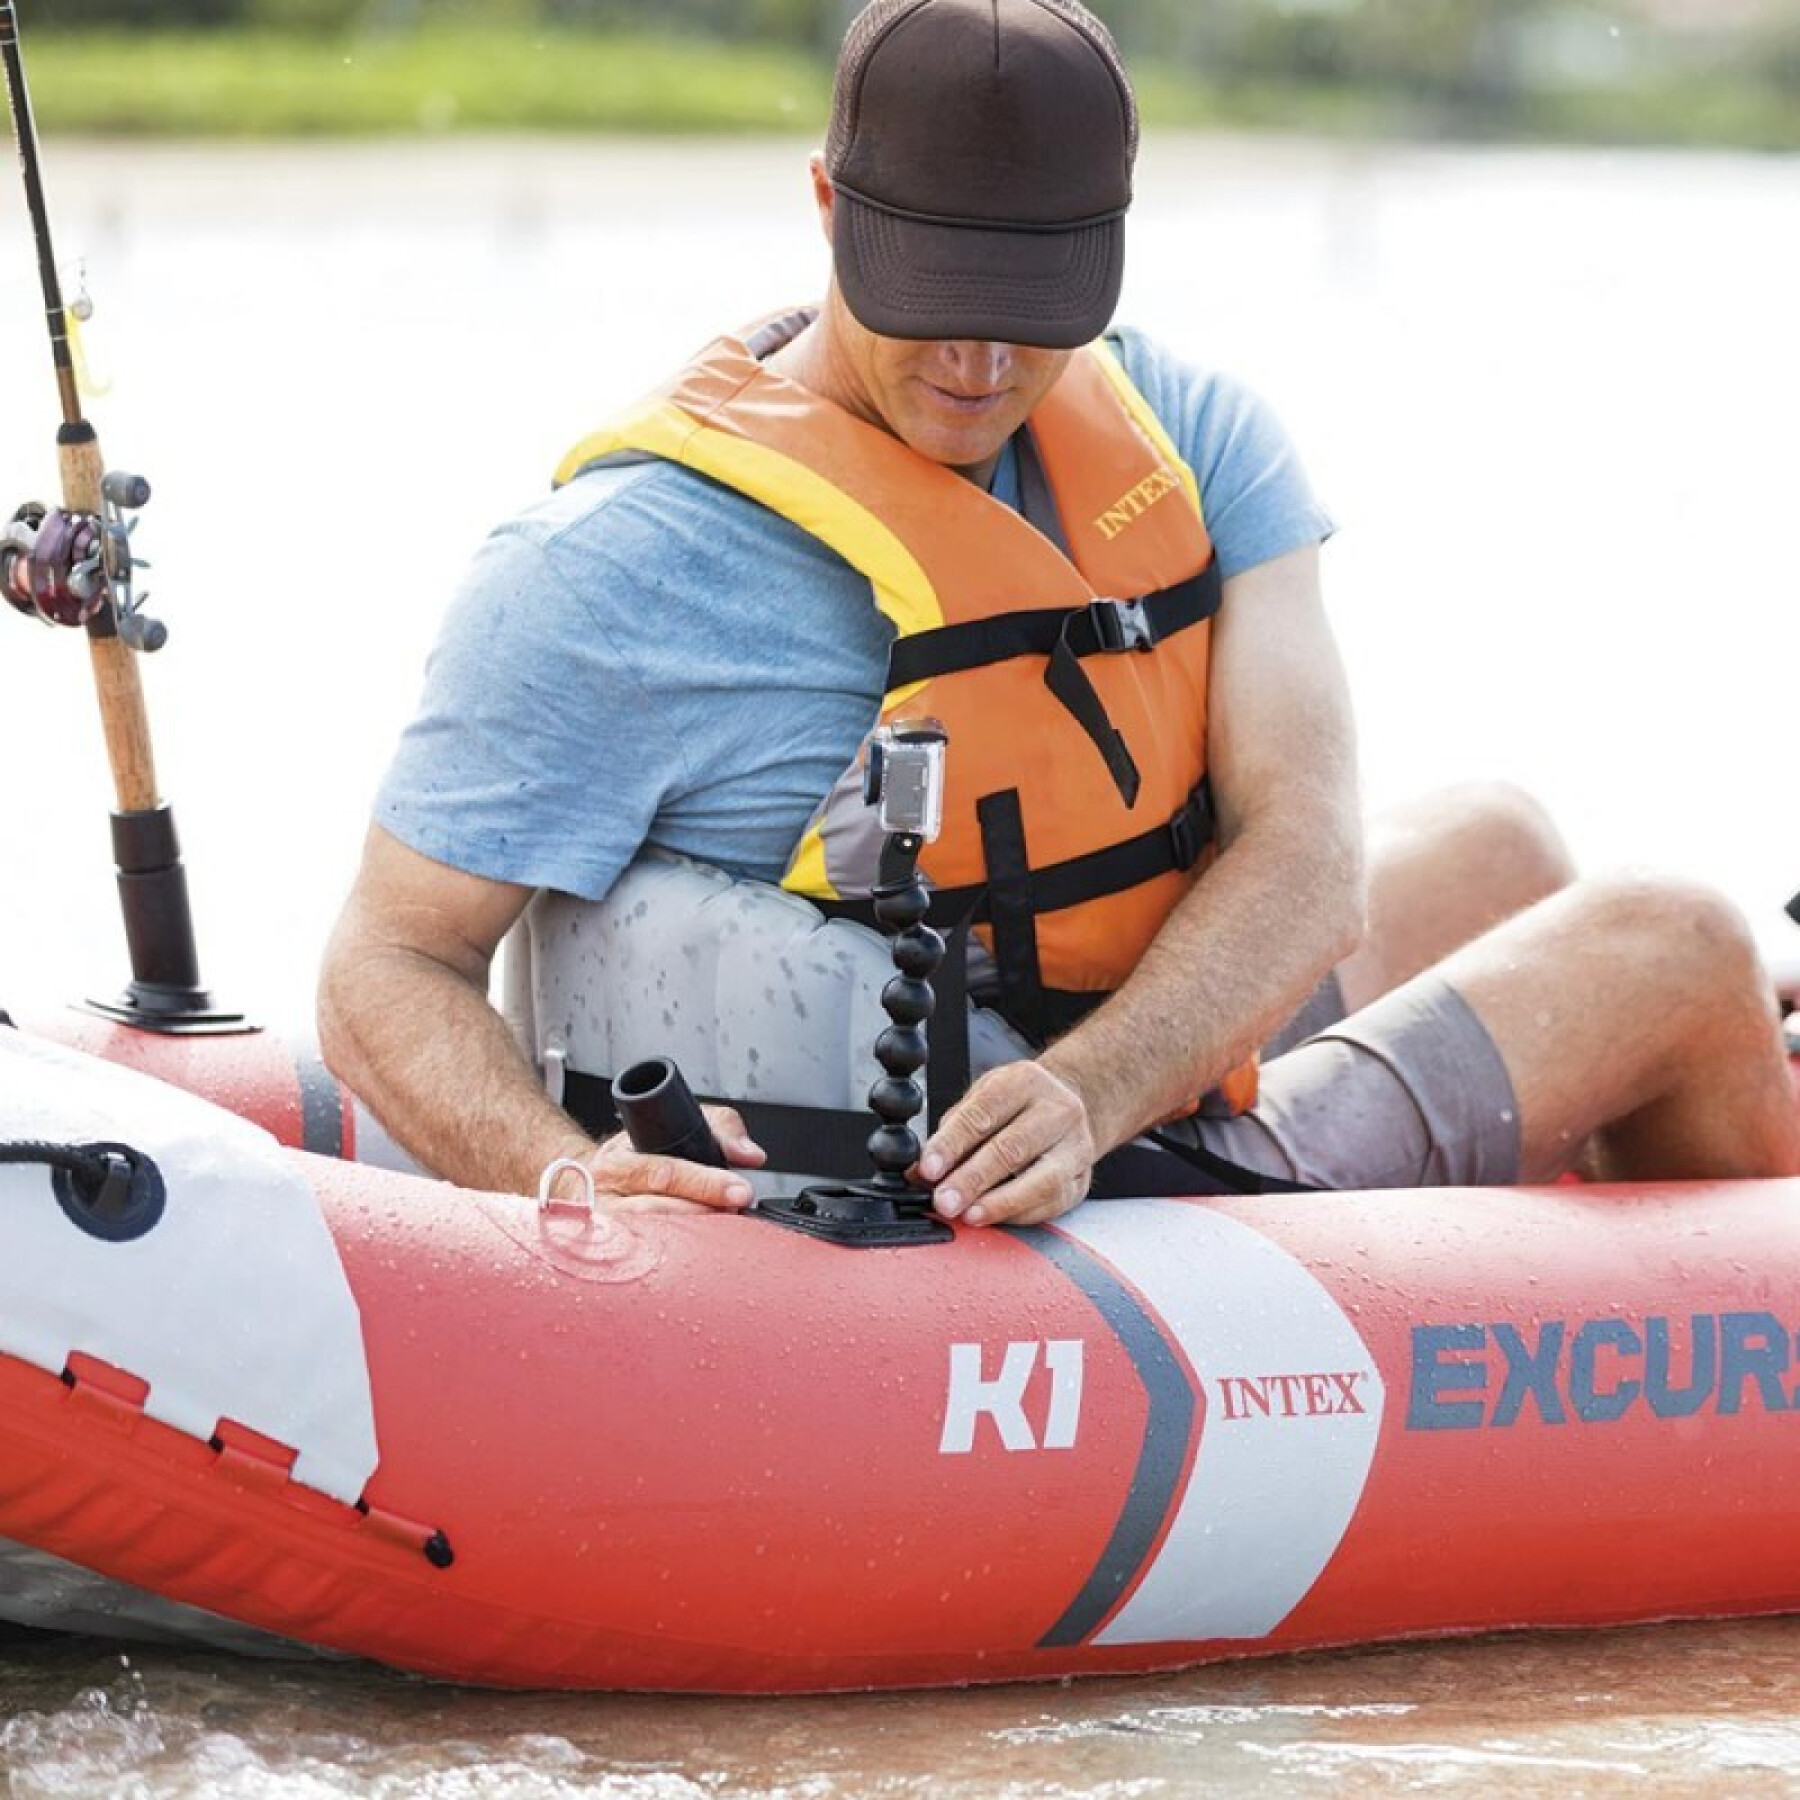 Inflatable kayak Intex Excursion Pro K1